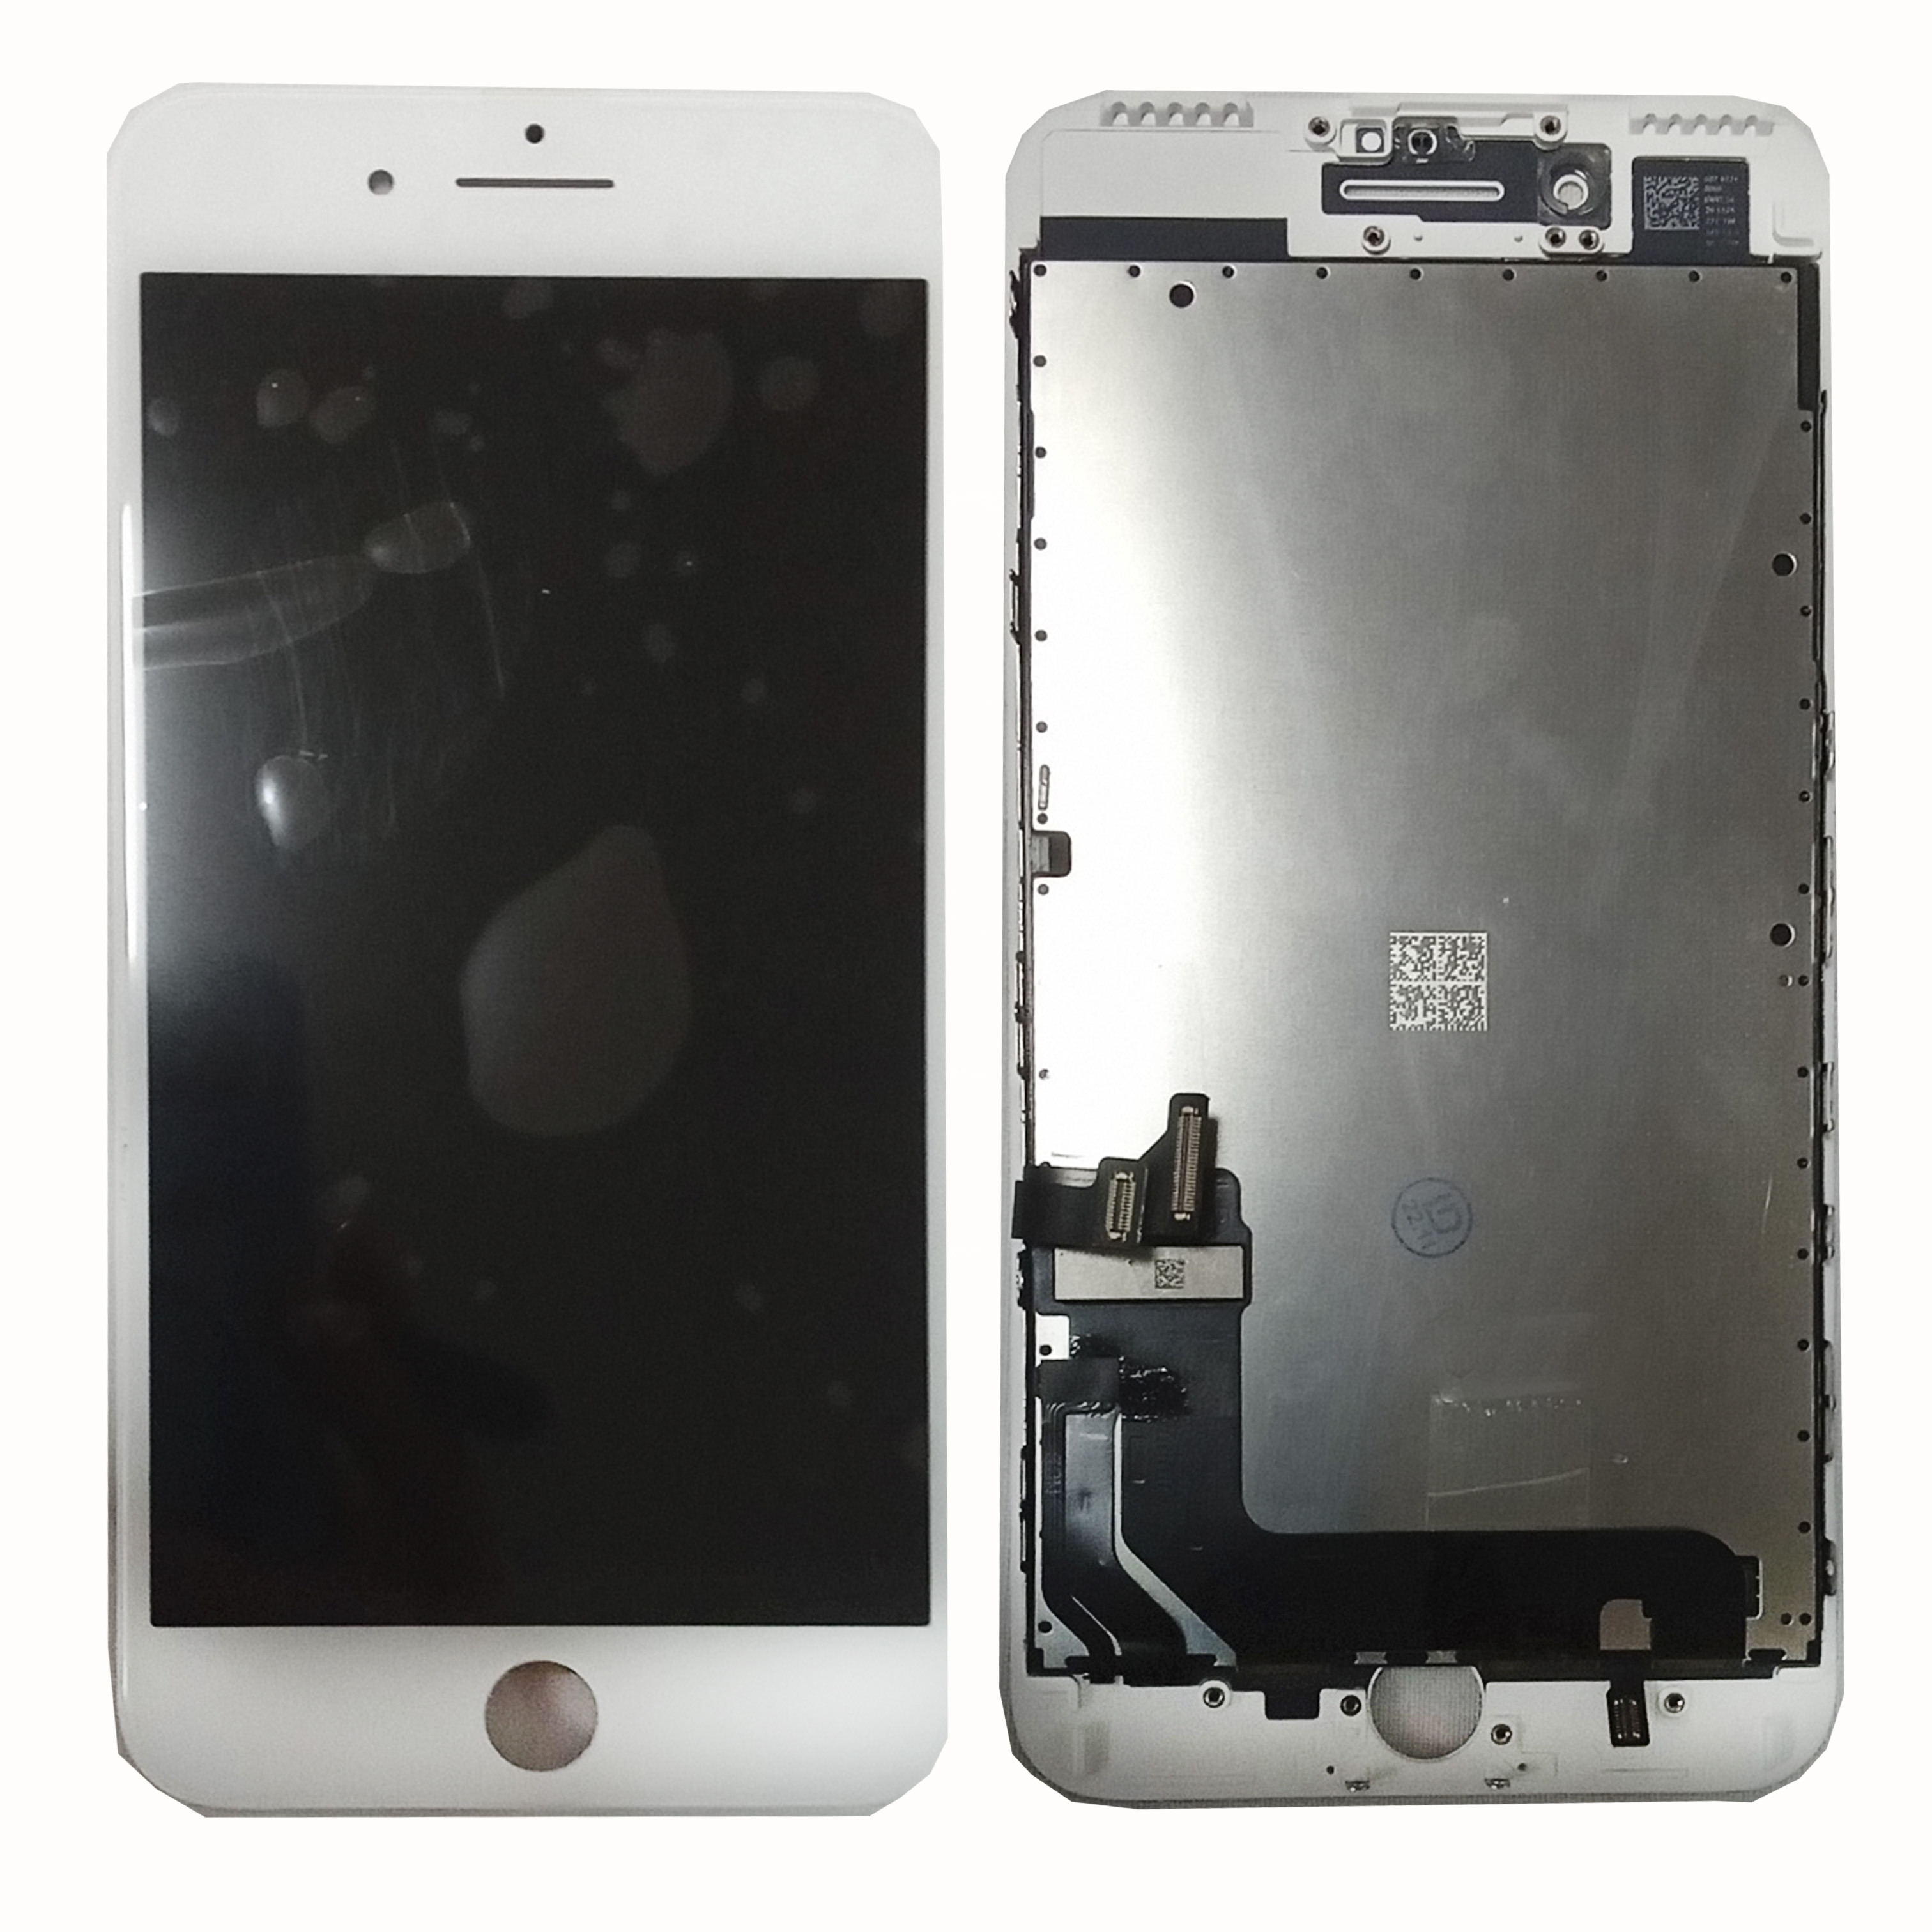 Модуль телефона iPhone 7 plus (дисплей+тачскрин) Rev DTP белый оригинал замененное стекло